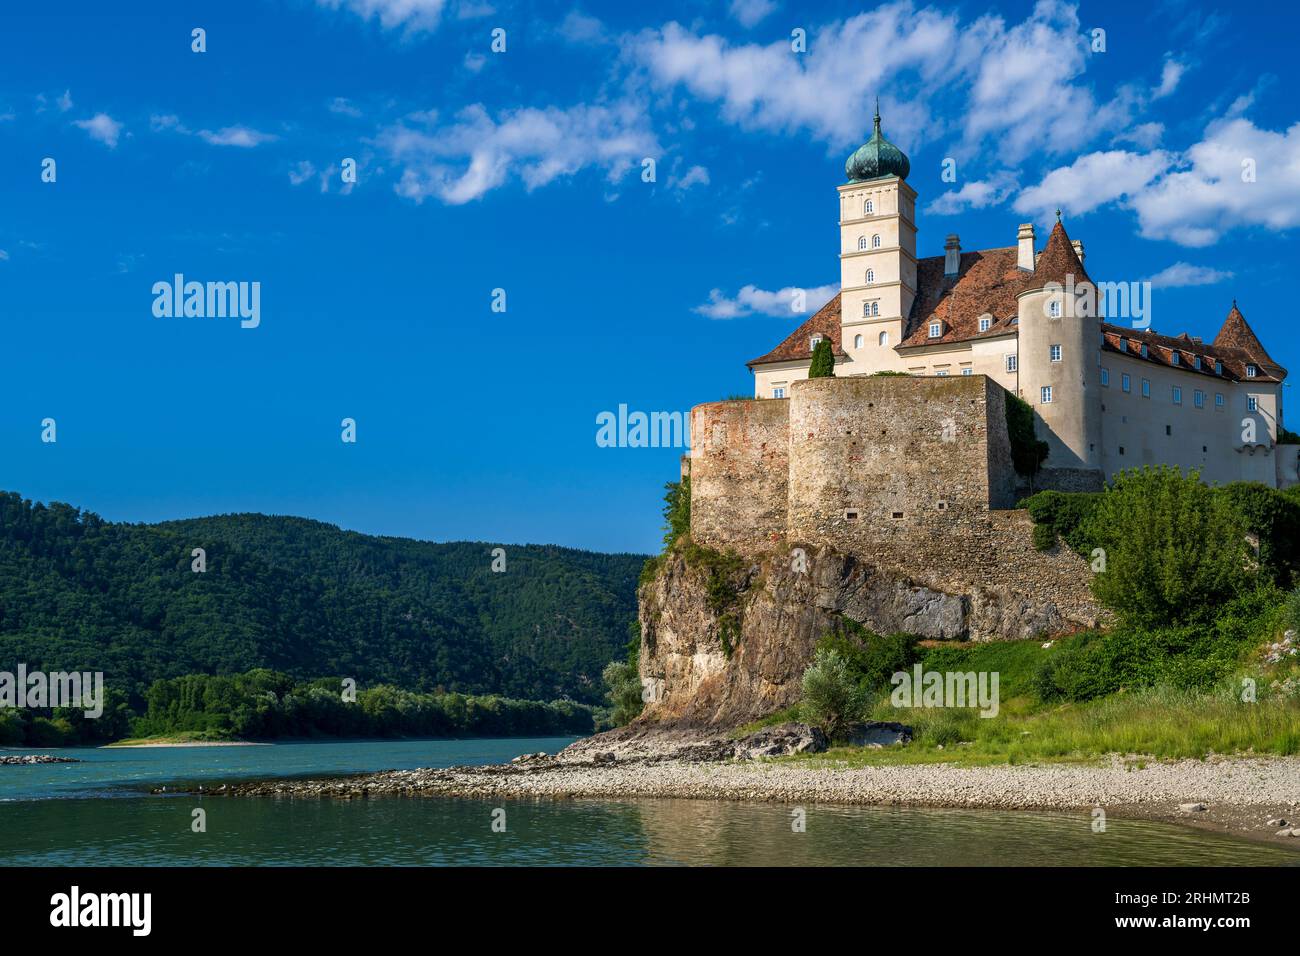 Castillo Schloss Schonbuhel, Schonbuhel-Aggsbach, Baja Austria, Austria Foto de stock